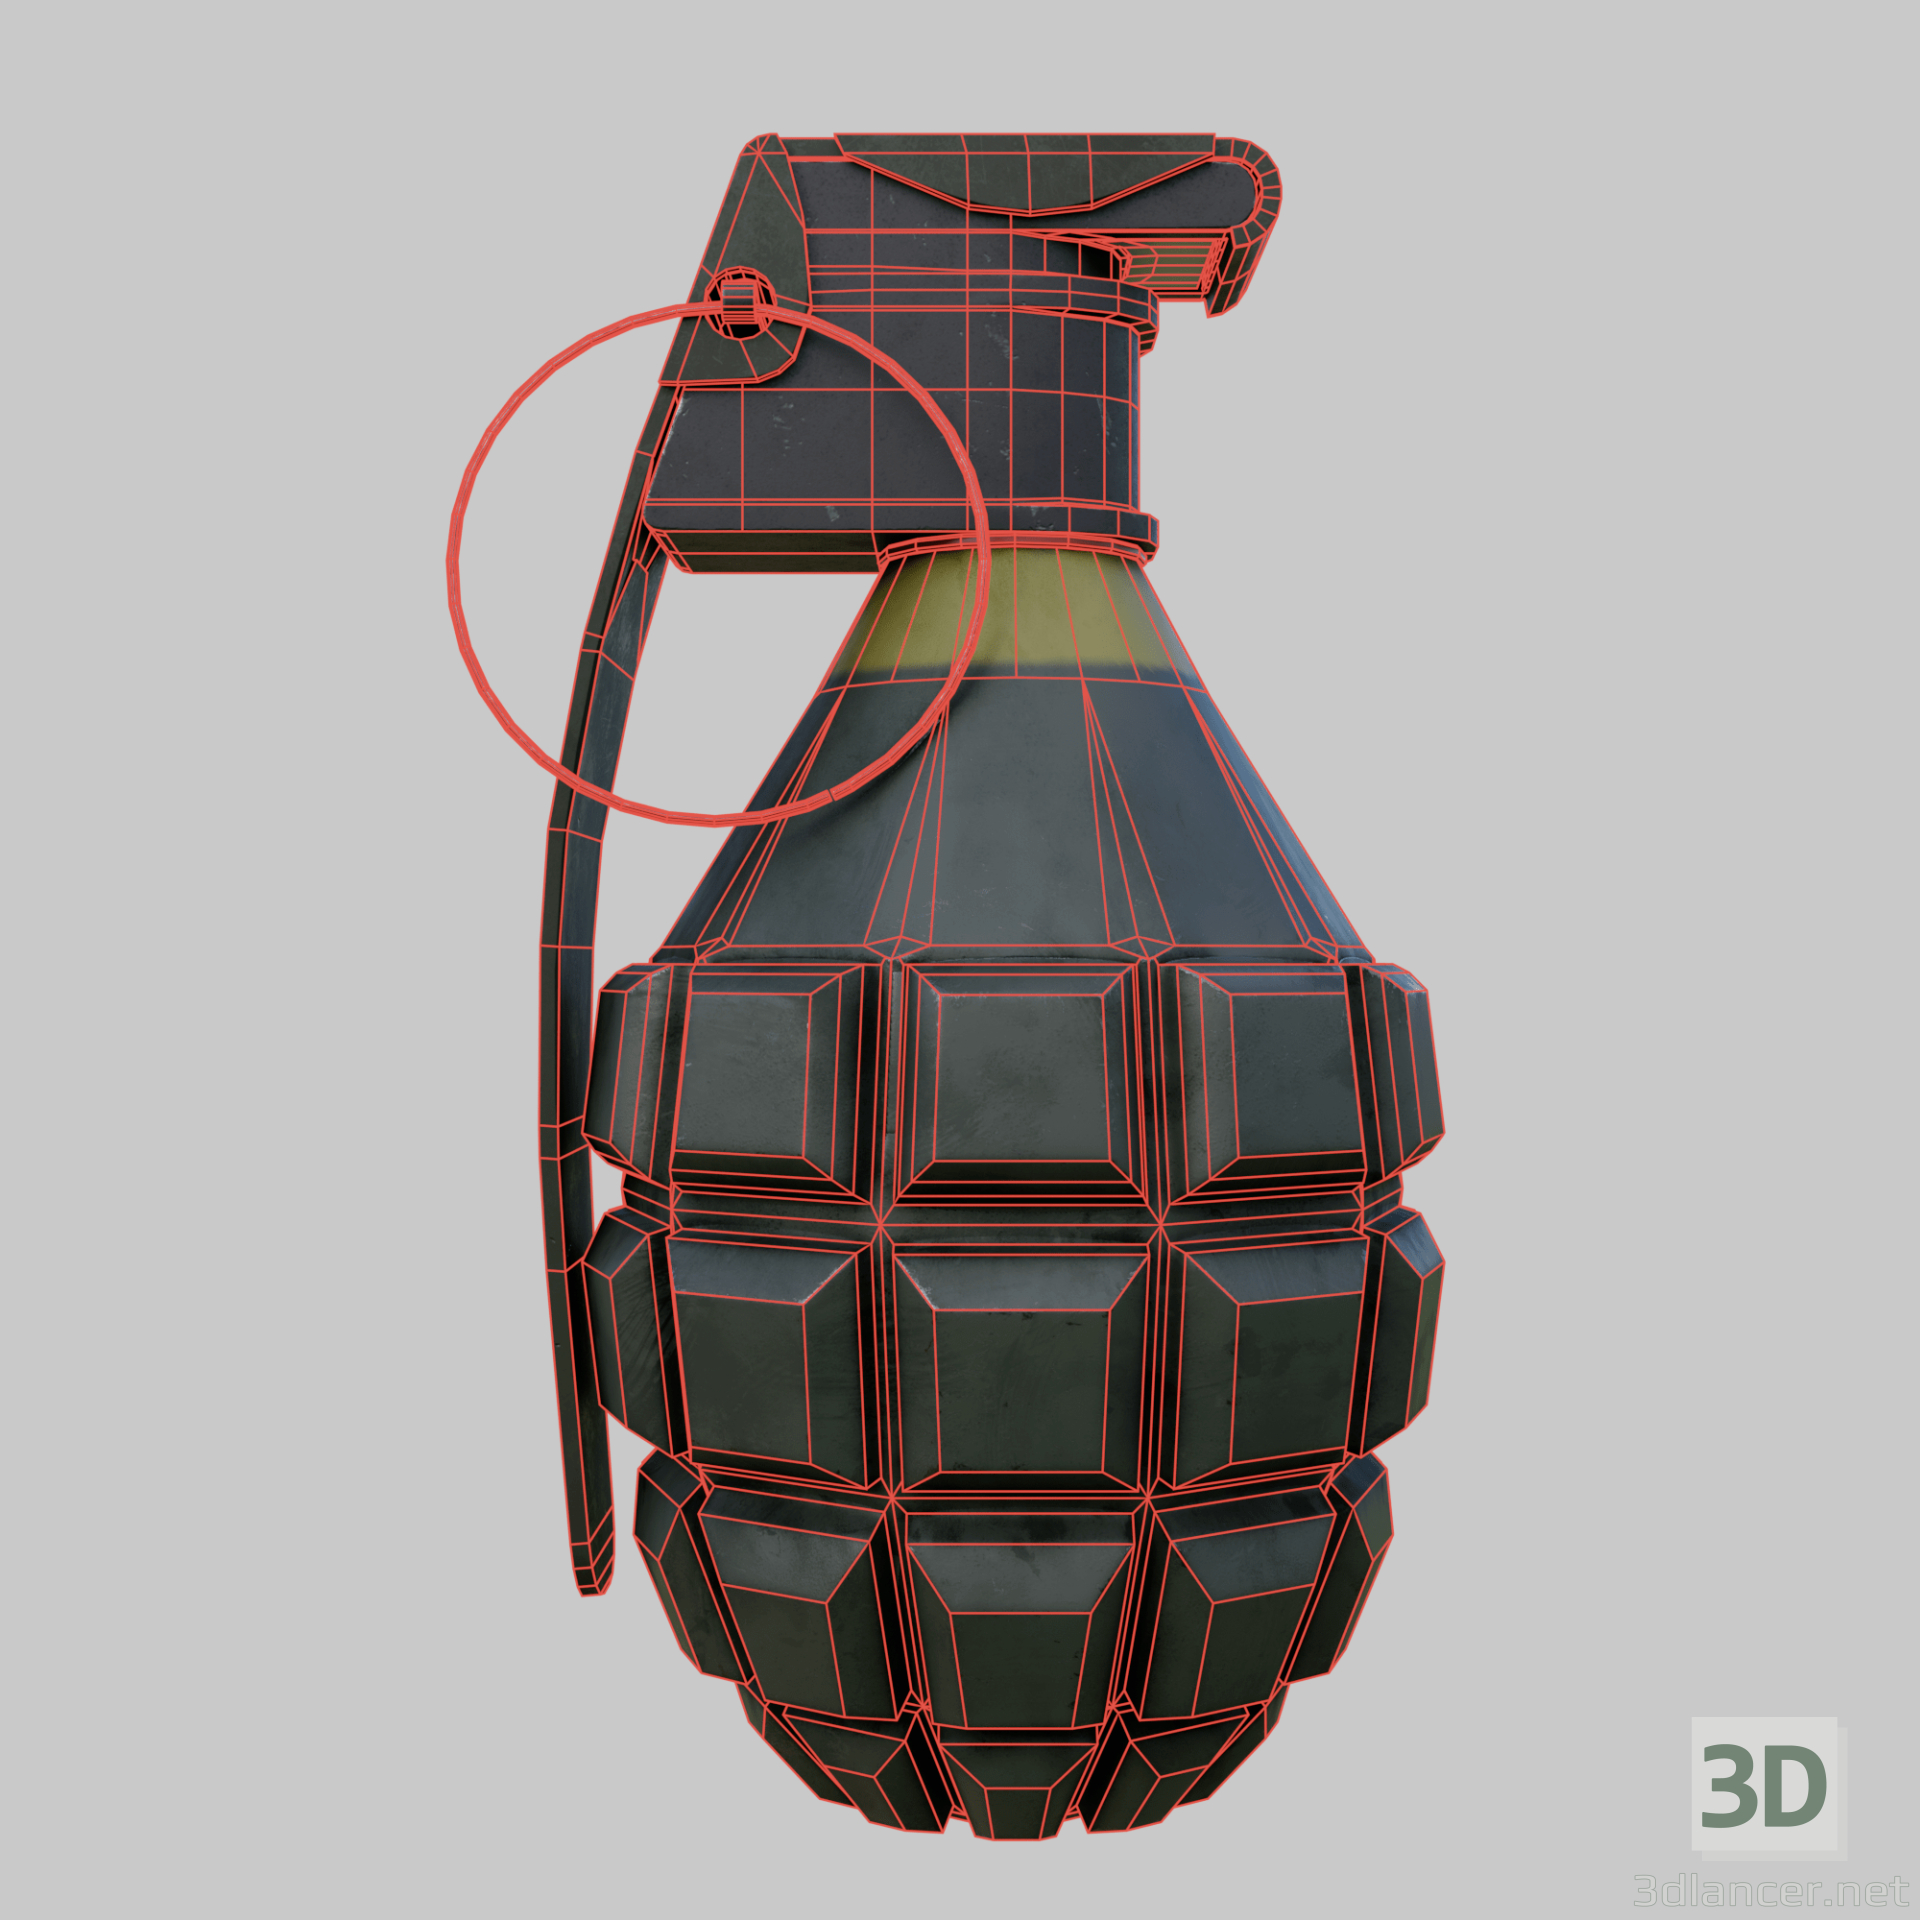 3d Grenade MK 2 model buy - render